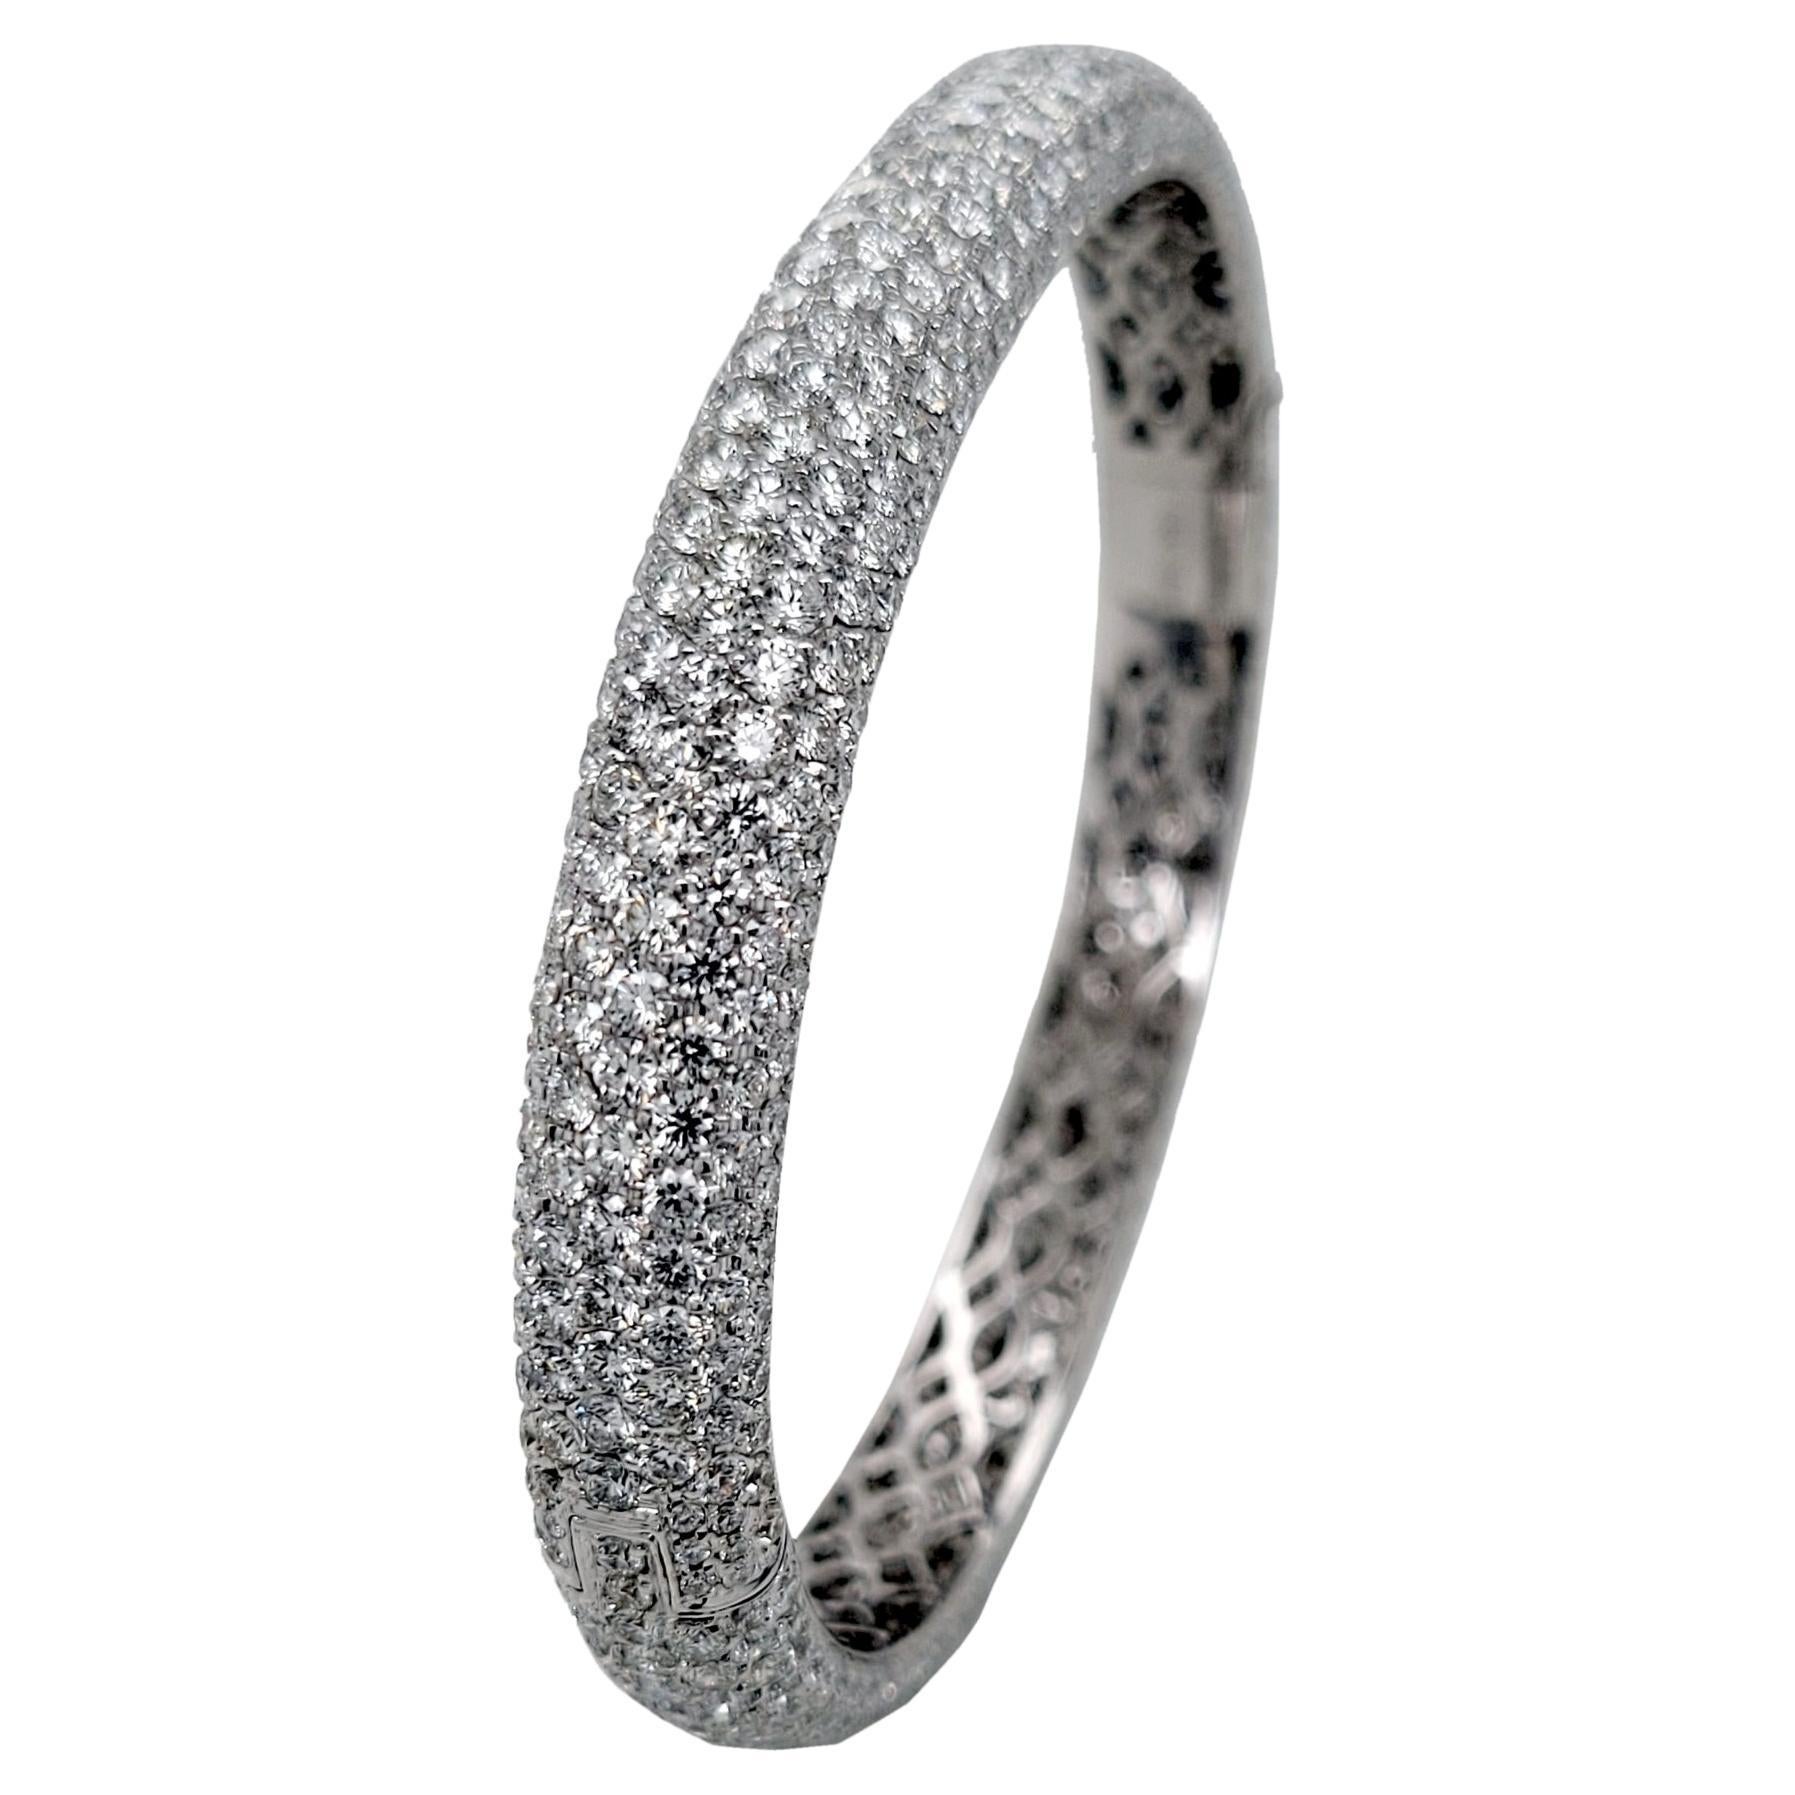 Cet élégant bracelet en or blanc 18 carats est composé de diamants pavés de forme ovale et mesure 2,75 x 2,25 cm.  pouce de dimension et 8,1 mm de largeur. Ce bracelet est fabriqué par des artisans de la plus haute qualité, comme on peut le voir sur